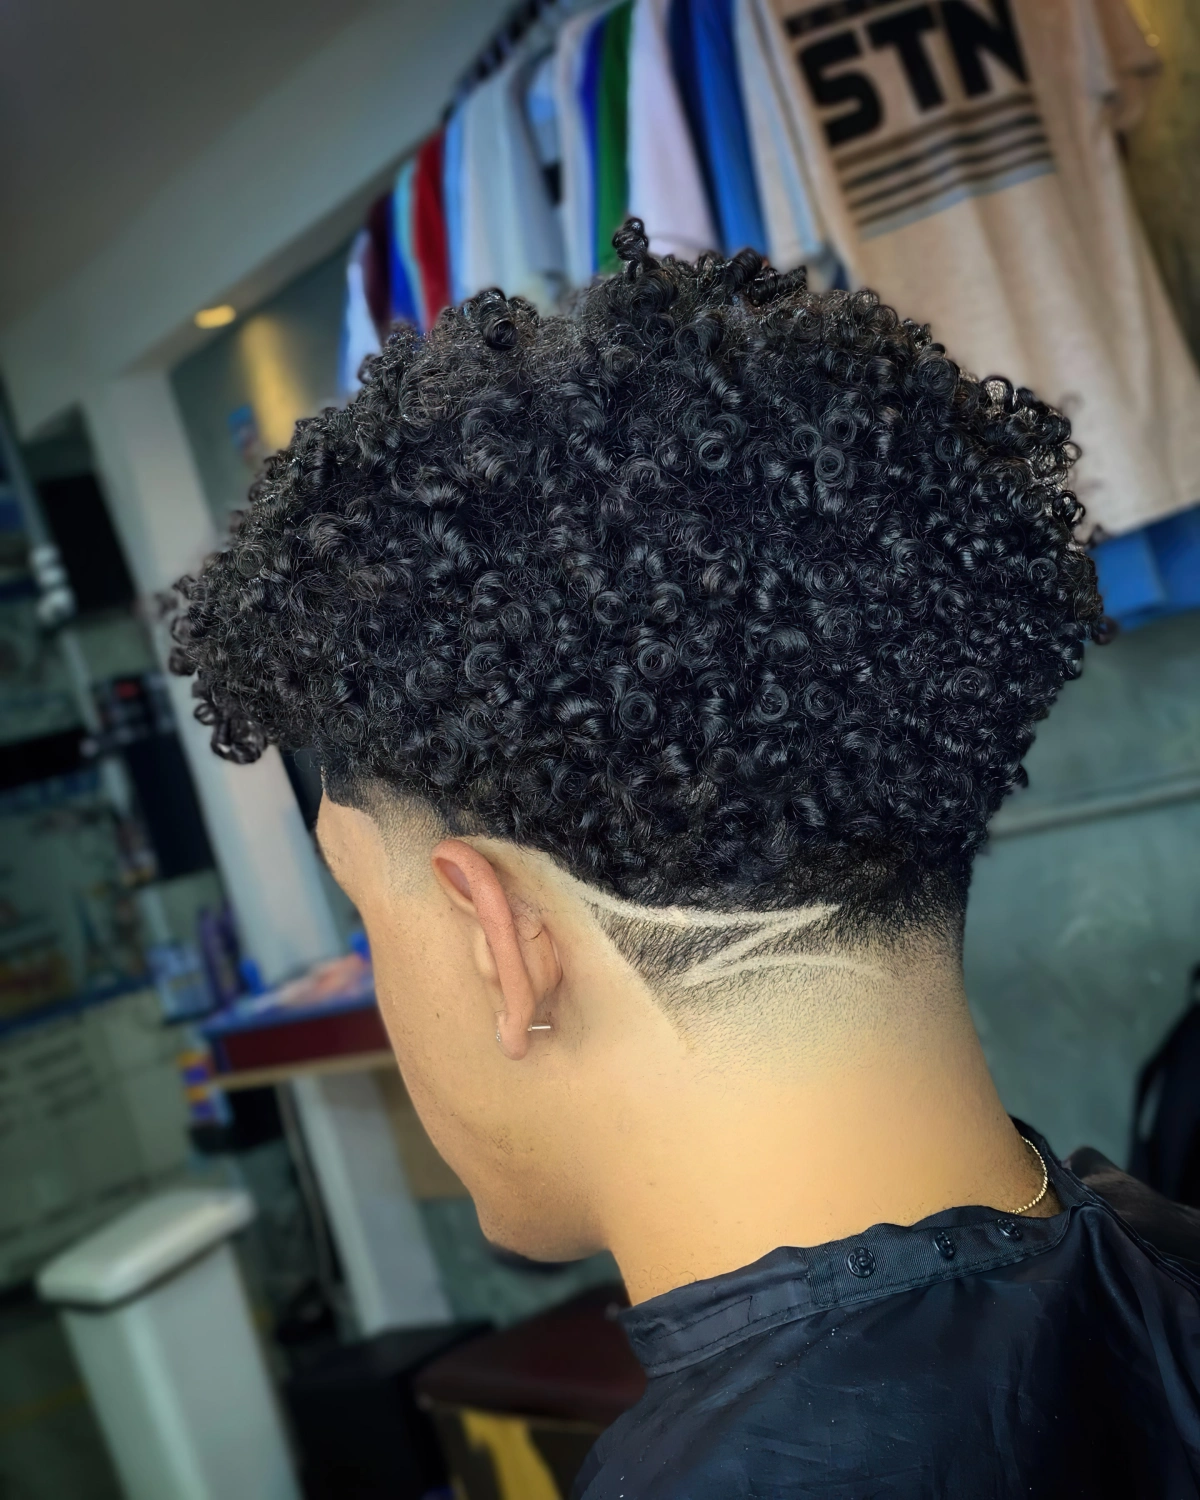 motifs rases sur nuque cotes edgar cut cheveux frises coupe afro homme moderne